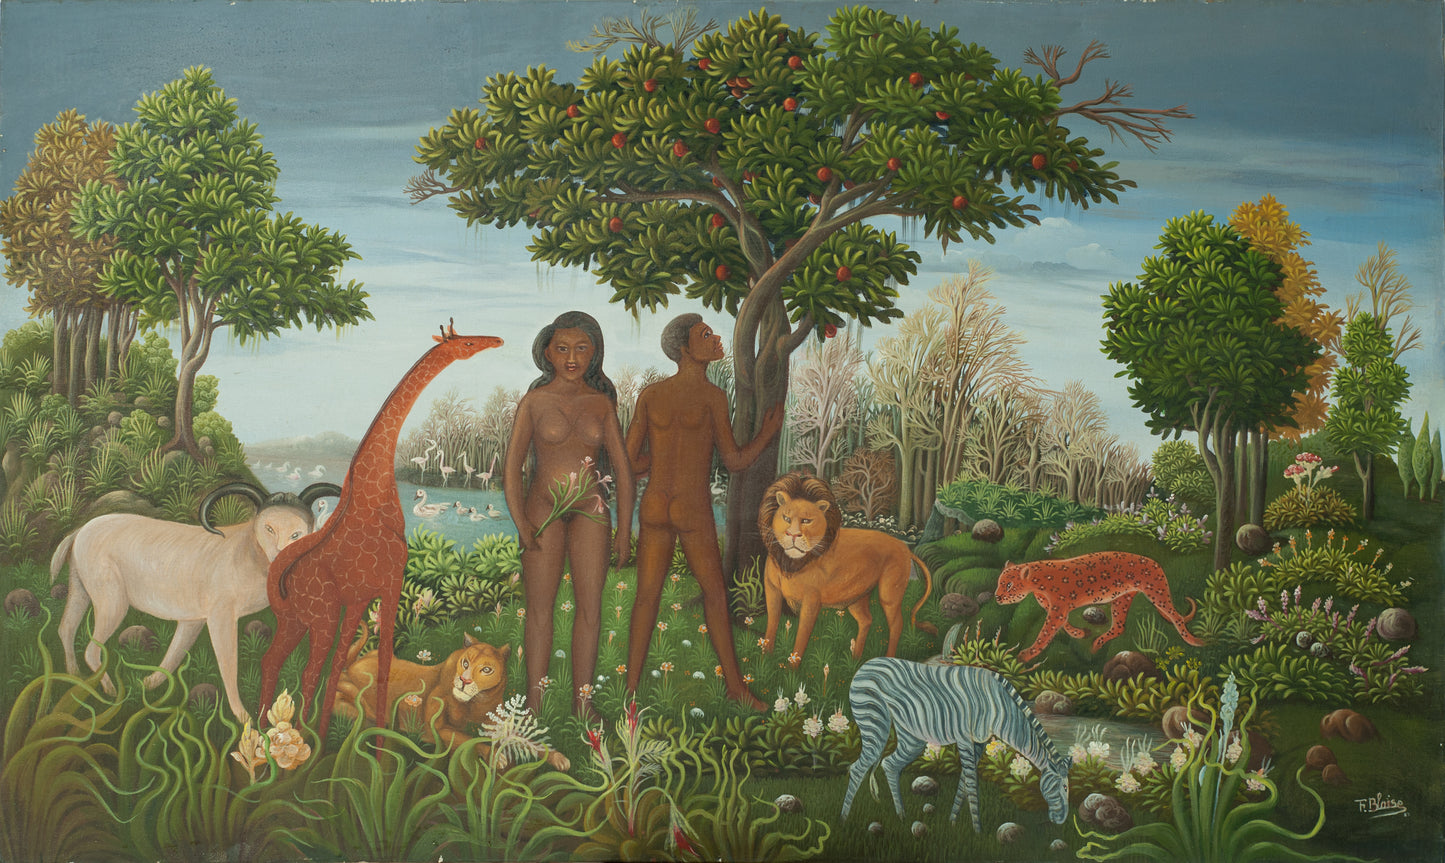 Fabolon Blaise (1959-1985) 36"x60" Adam et Eve sous l'arbre c1984 Huile sur toile Peinture #1-3-96GSN-Fondation Marie &amp; Georges S. Nader